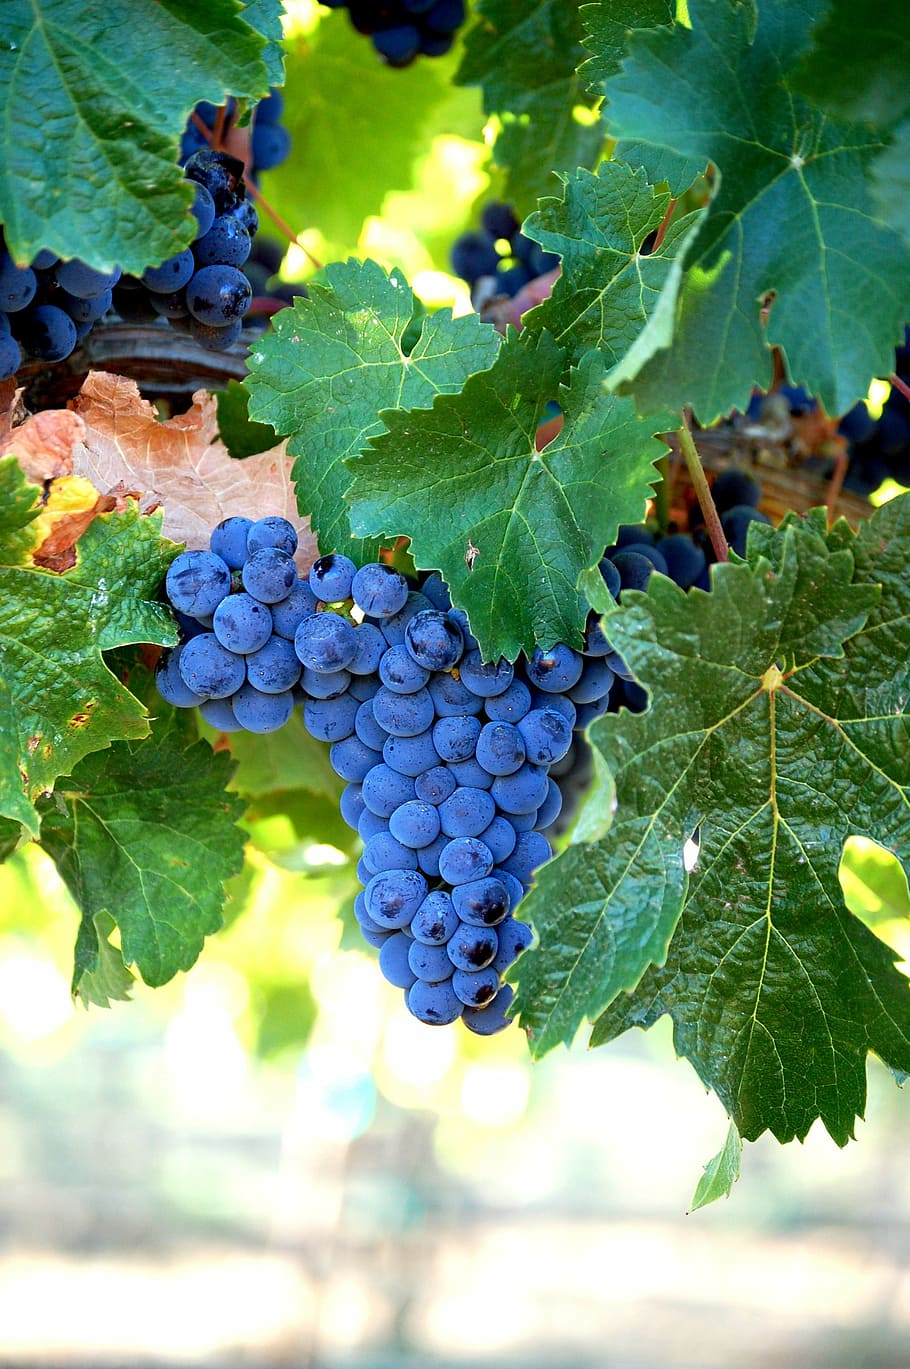 синий виноград, мерло, виноград, вино, фрукты, урожай, гроздь, виноградная лоза, виноградник, винодельня